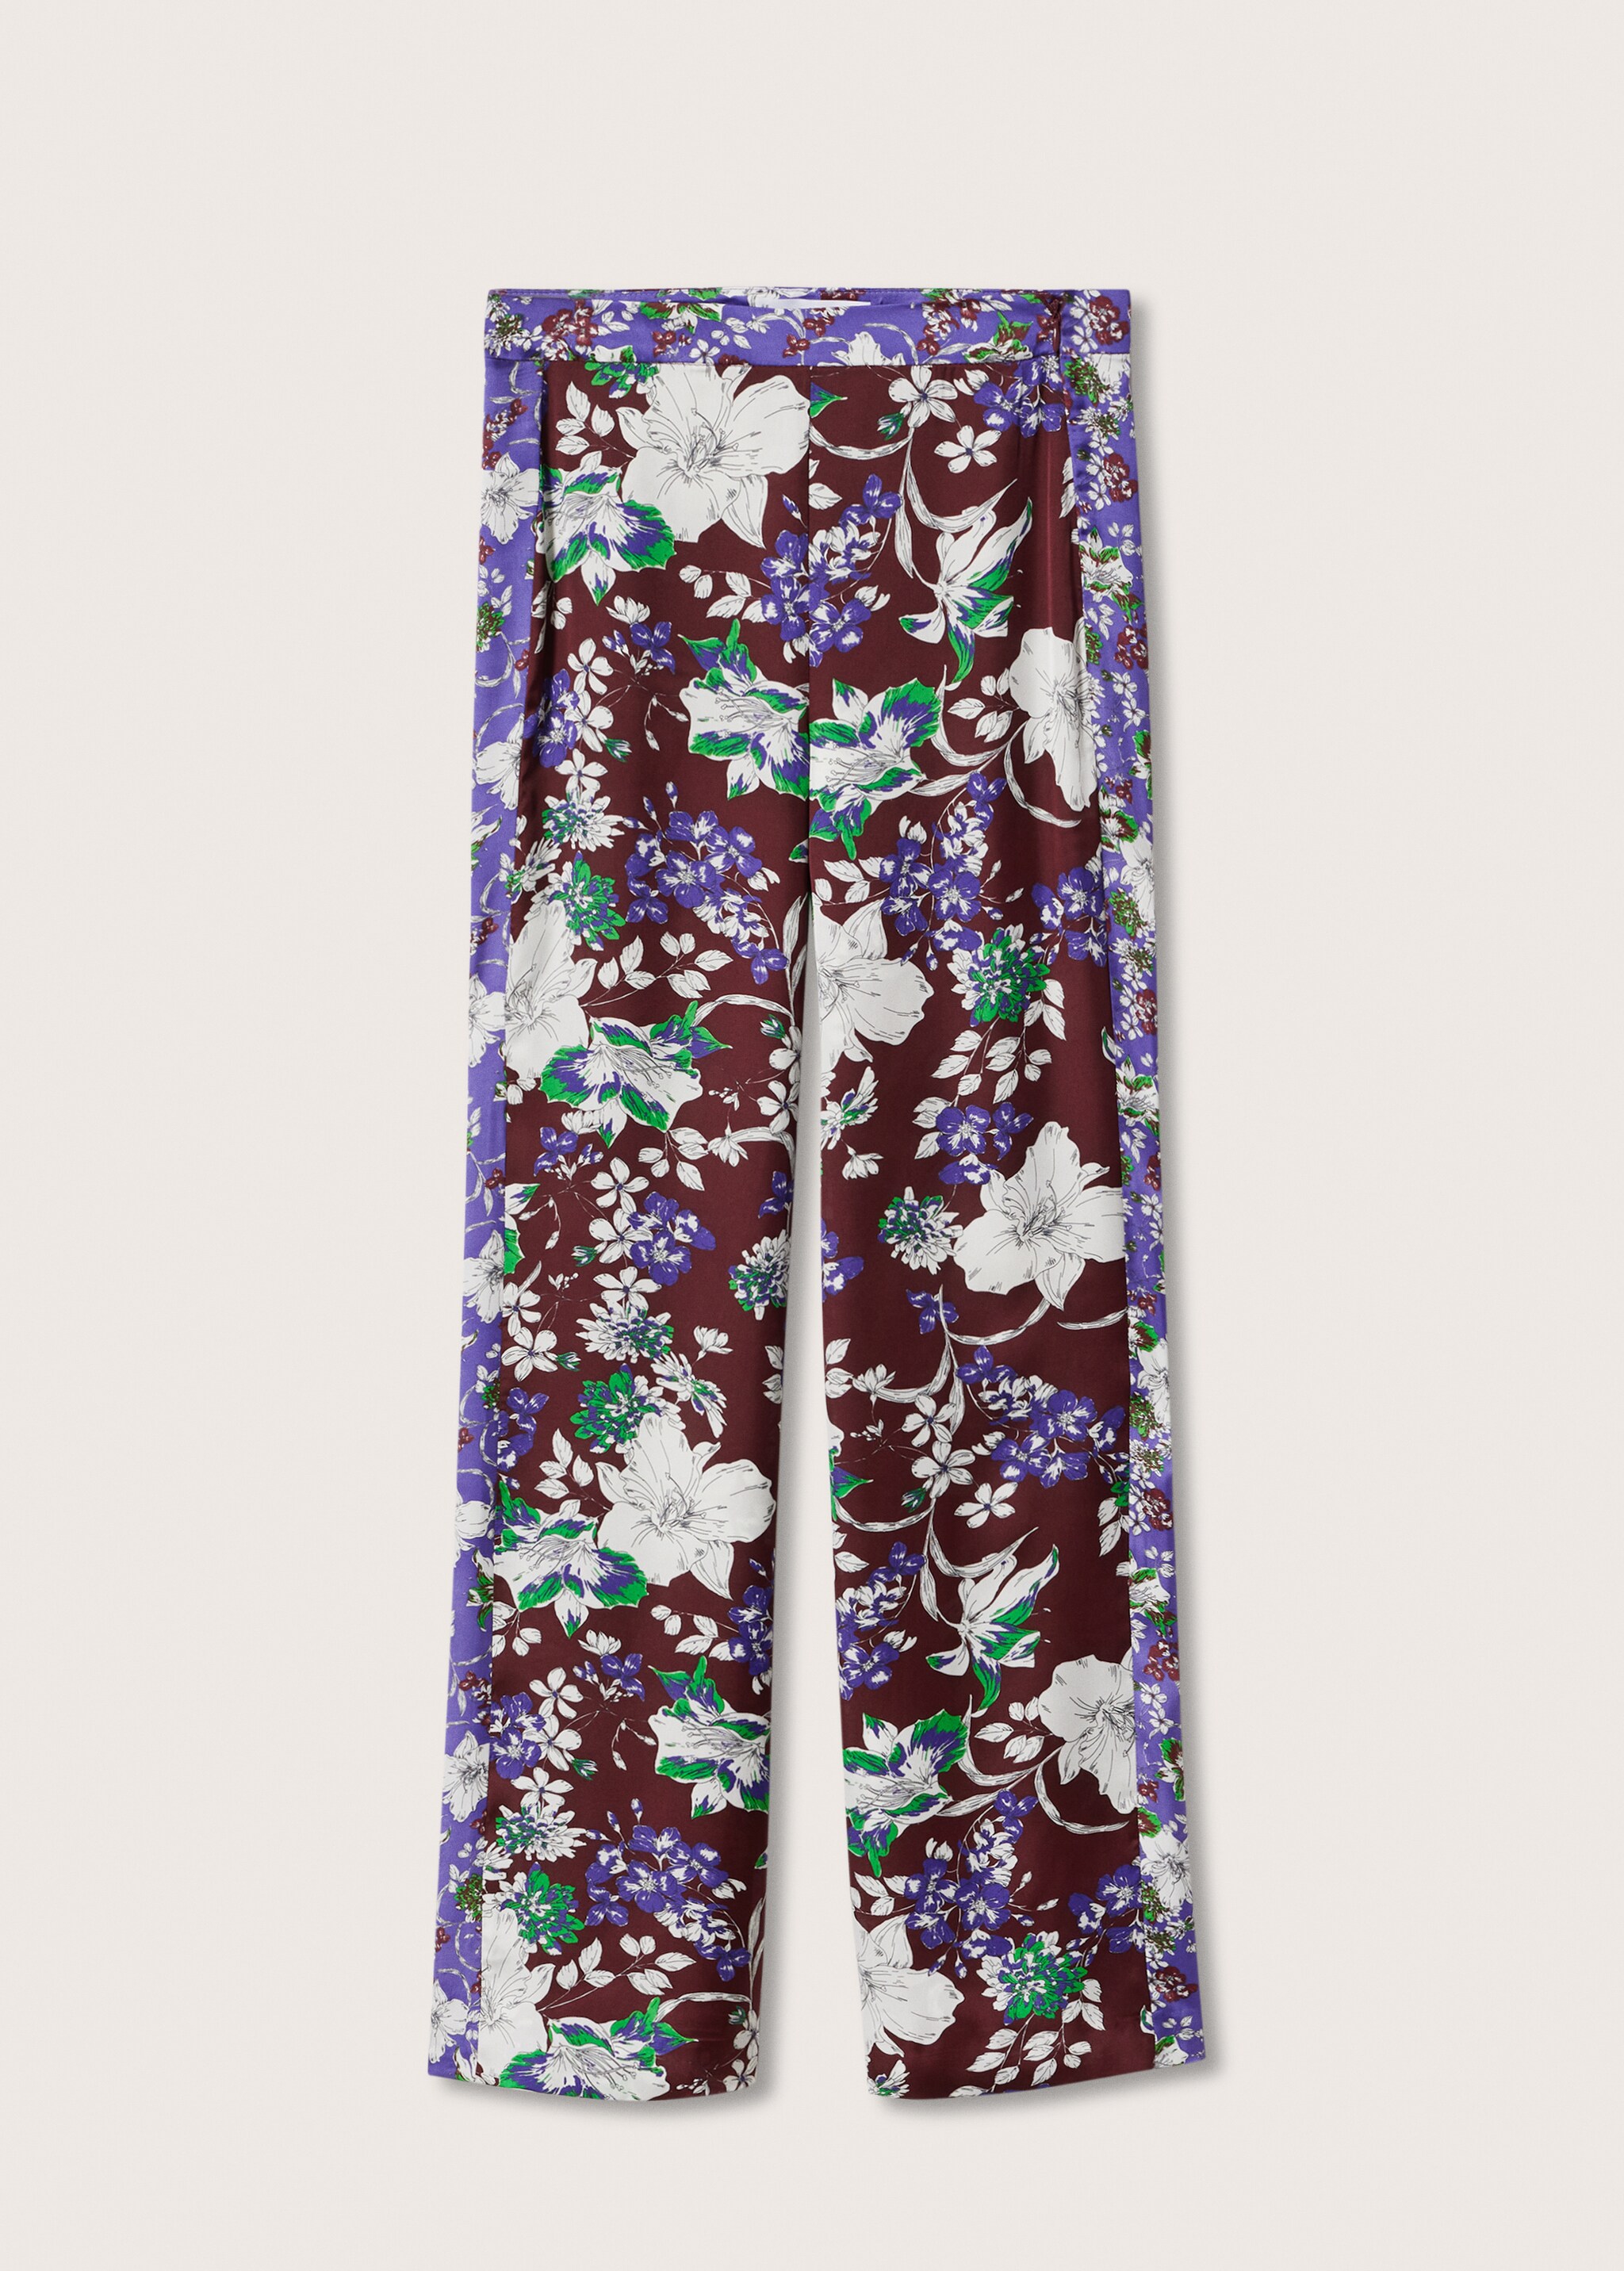 Pantalón estampado flores - Artículo sin modelo